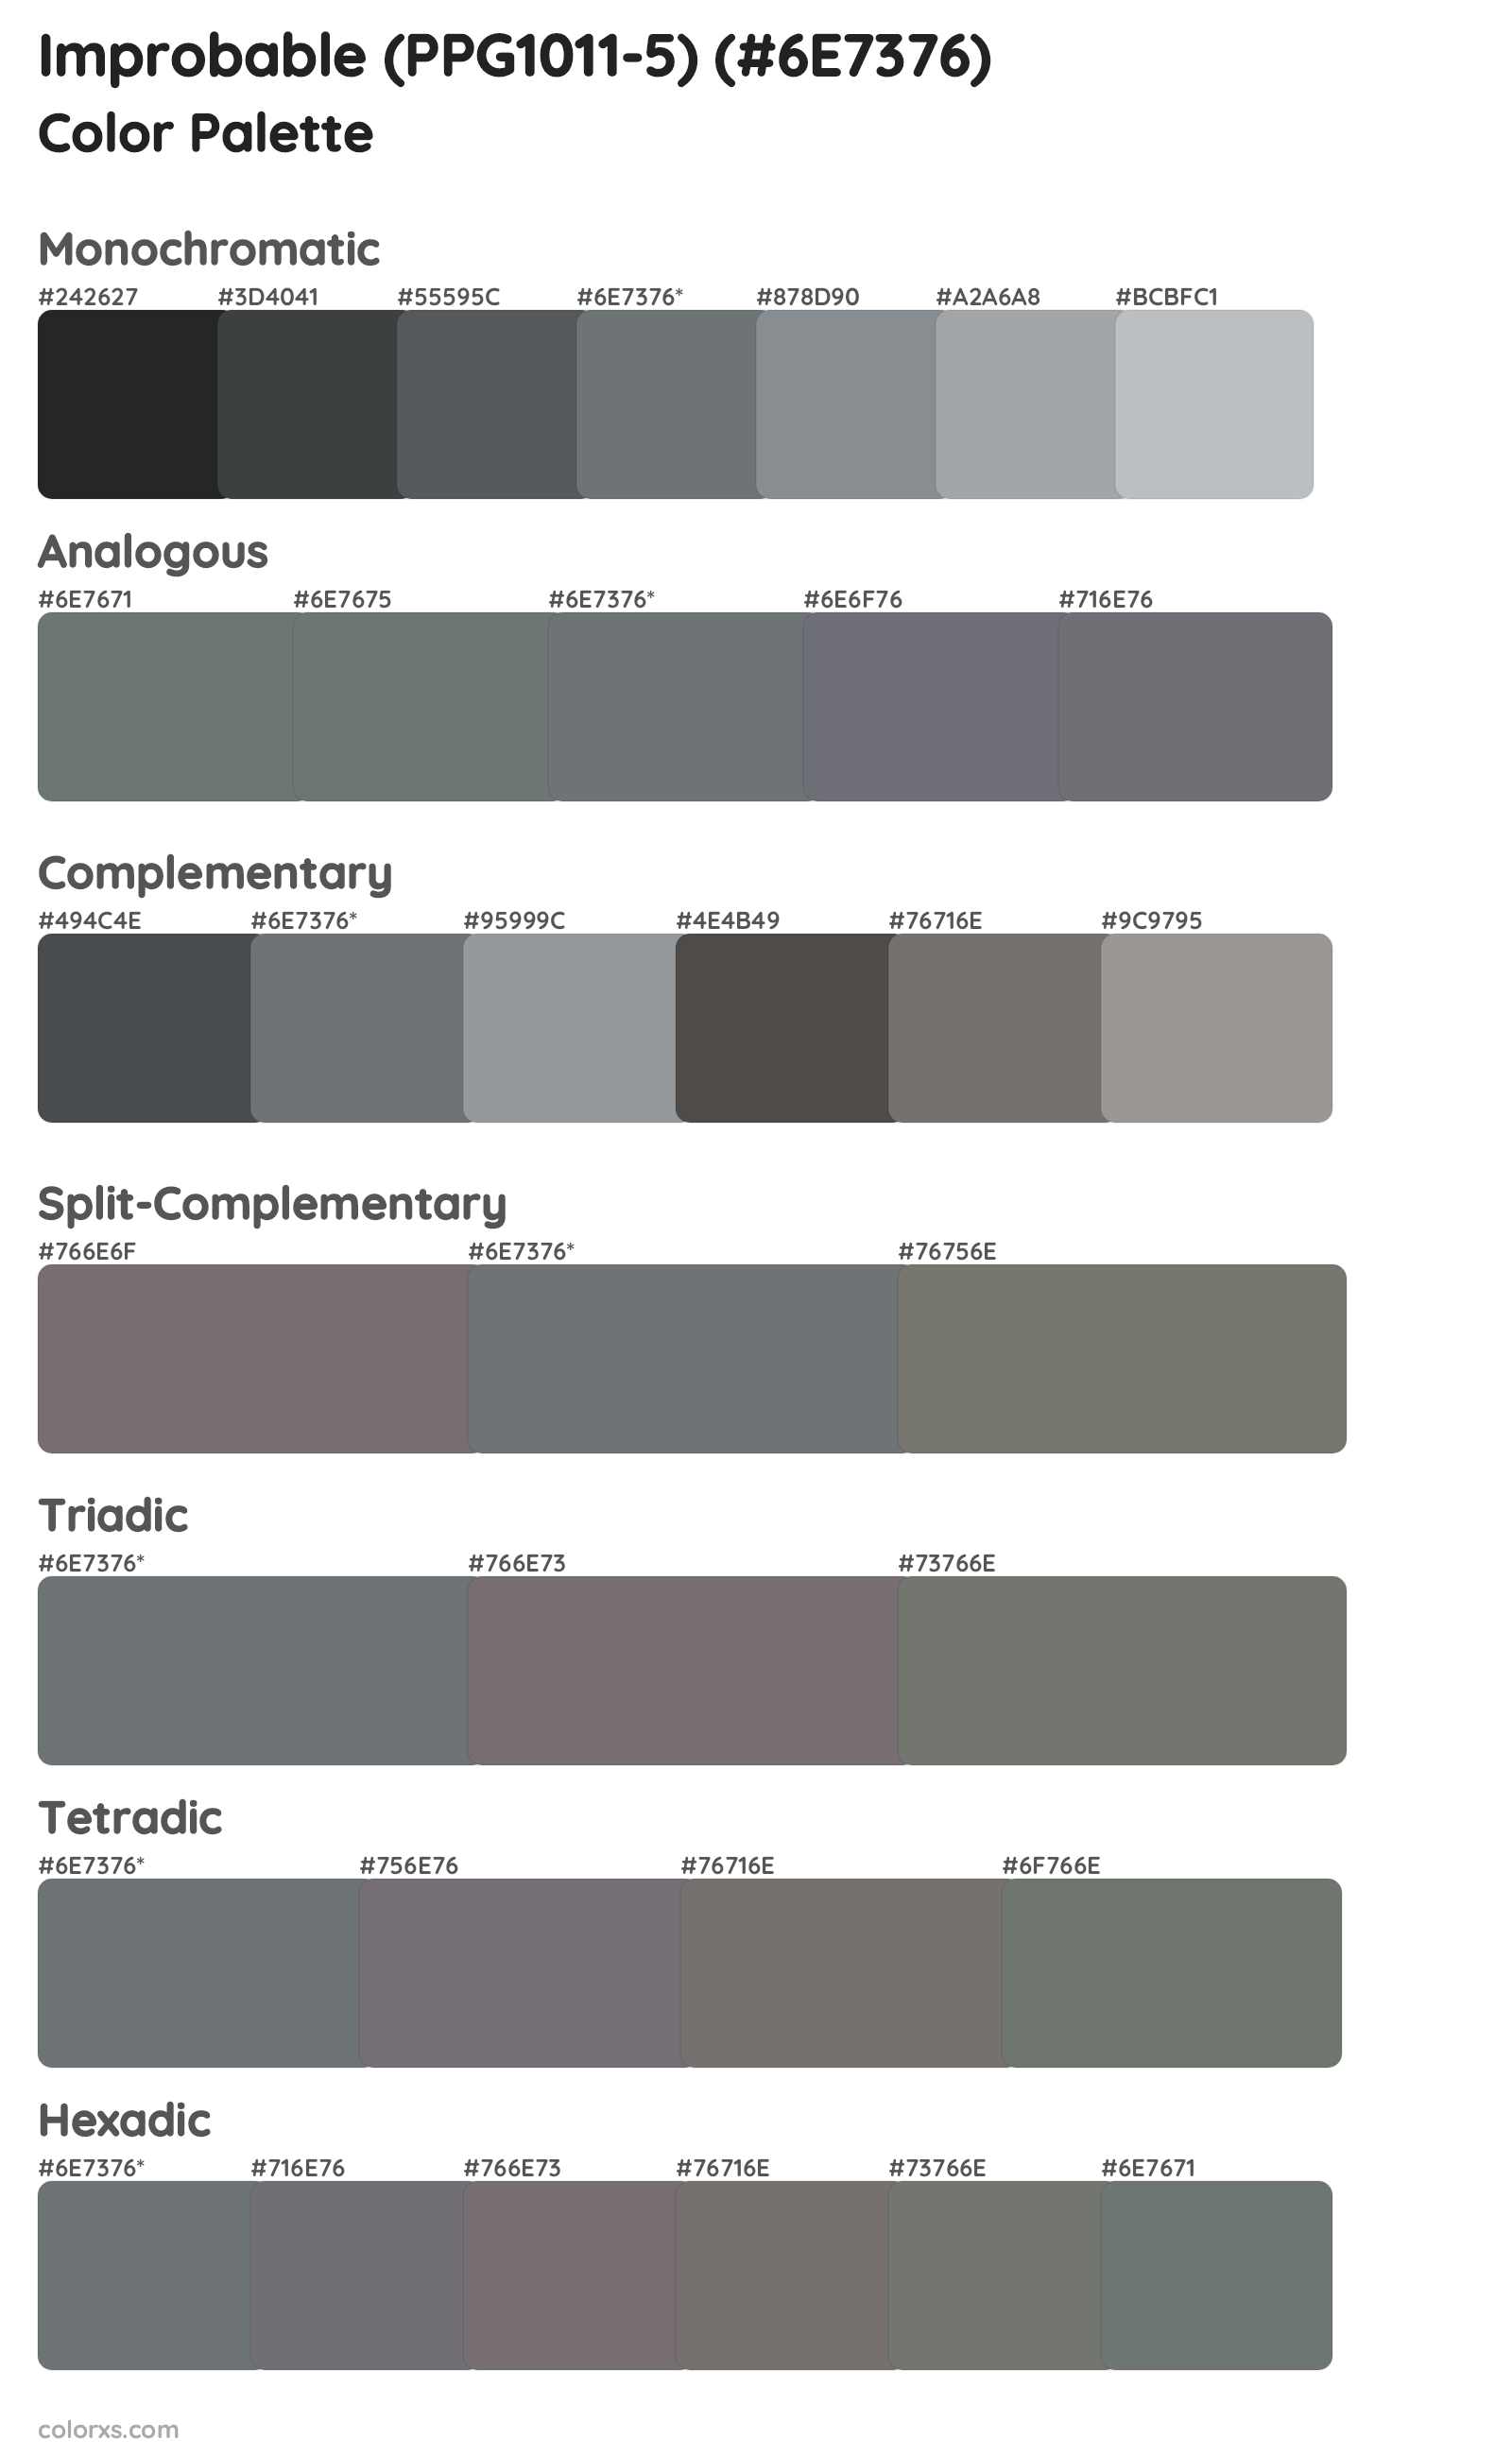 Improbable (PPG1011-5) Color Scheme Palettes